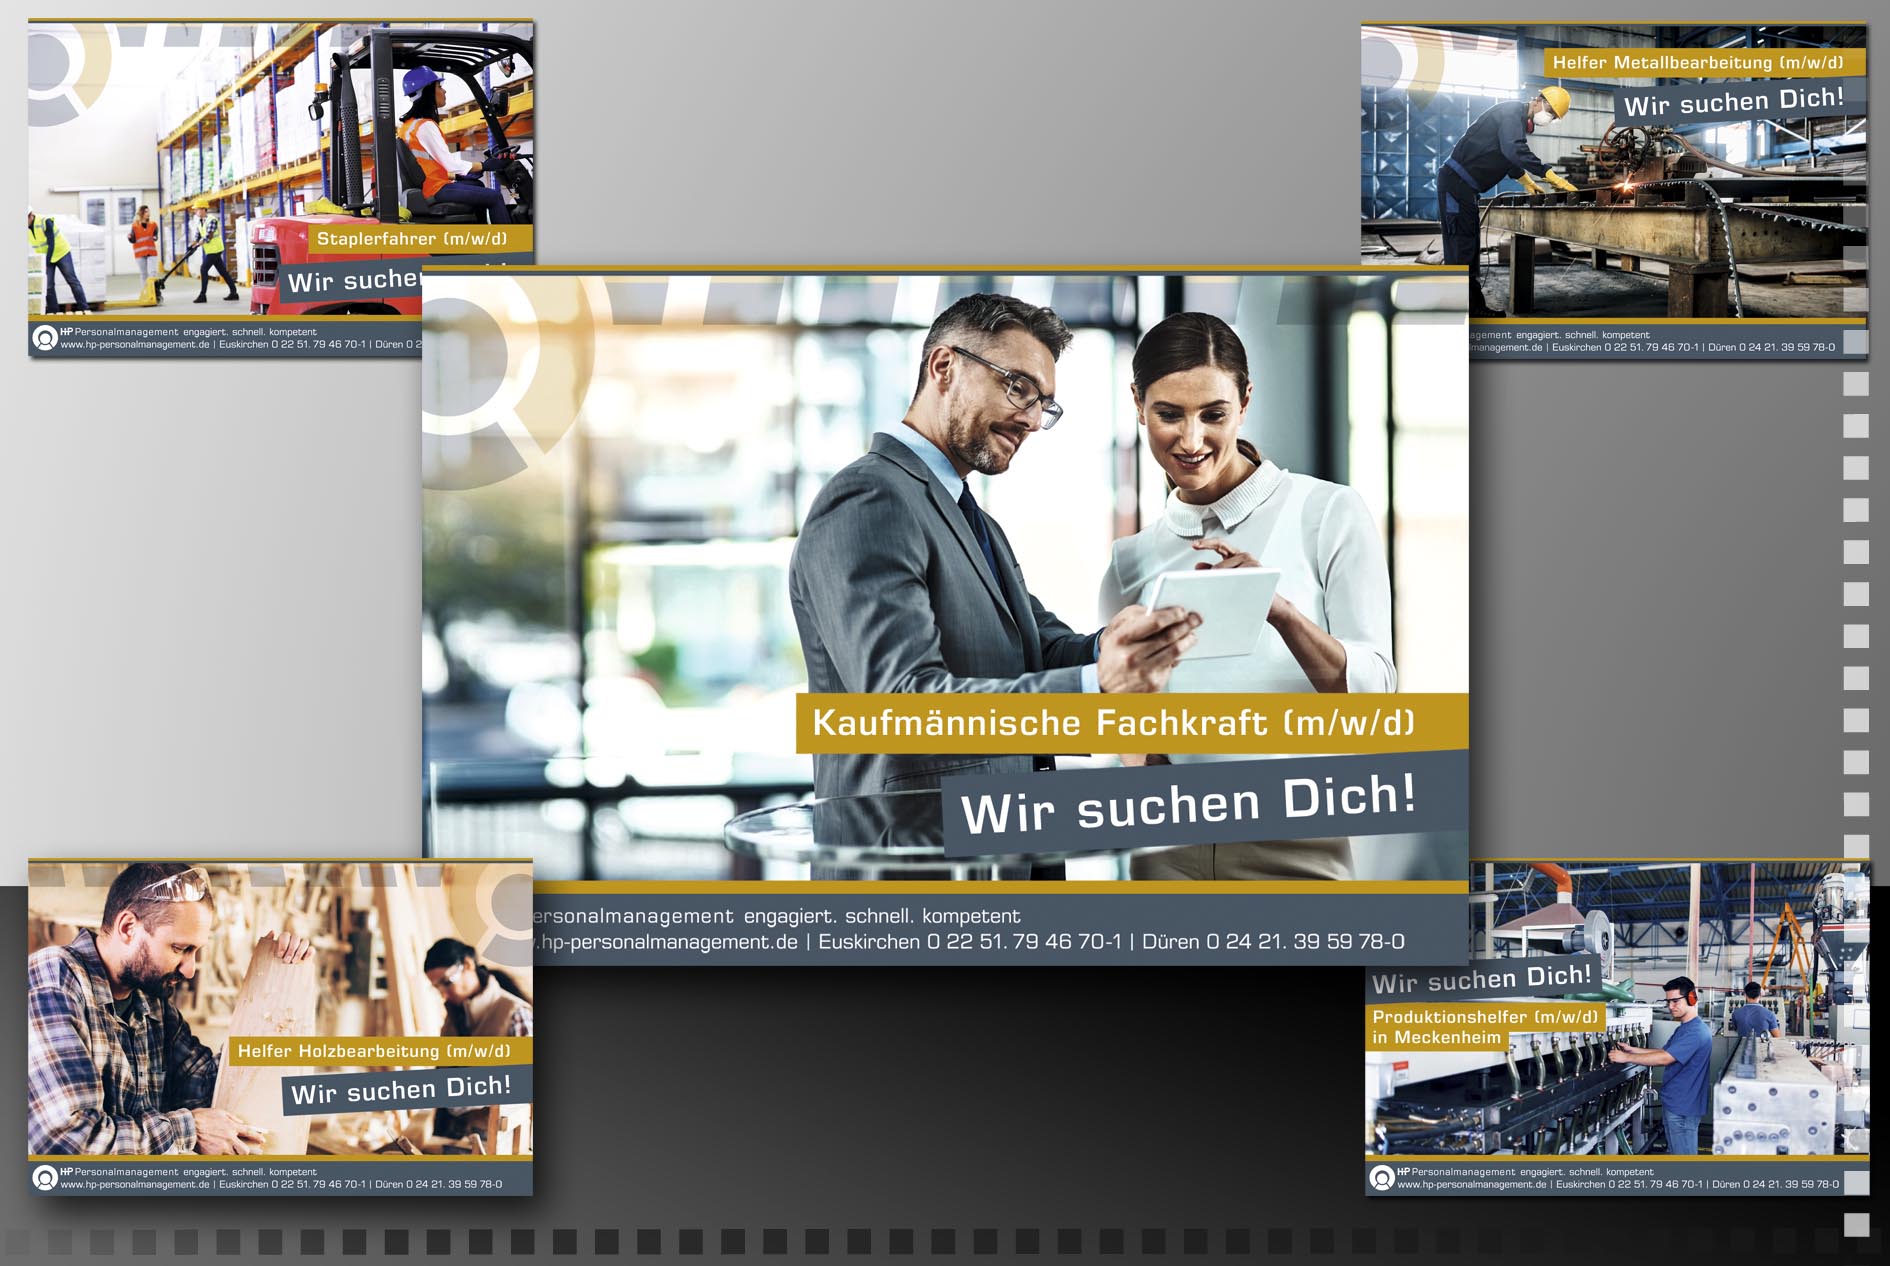 Konzeptionelle Facebook Bilder-Kampagne mit Stellenausschreibung für HP Personalmanagement Euskirchen